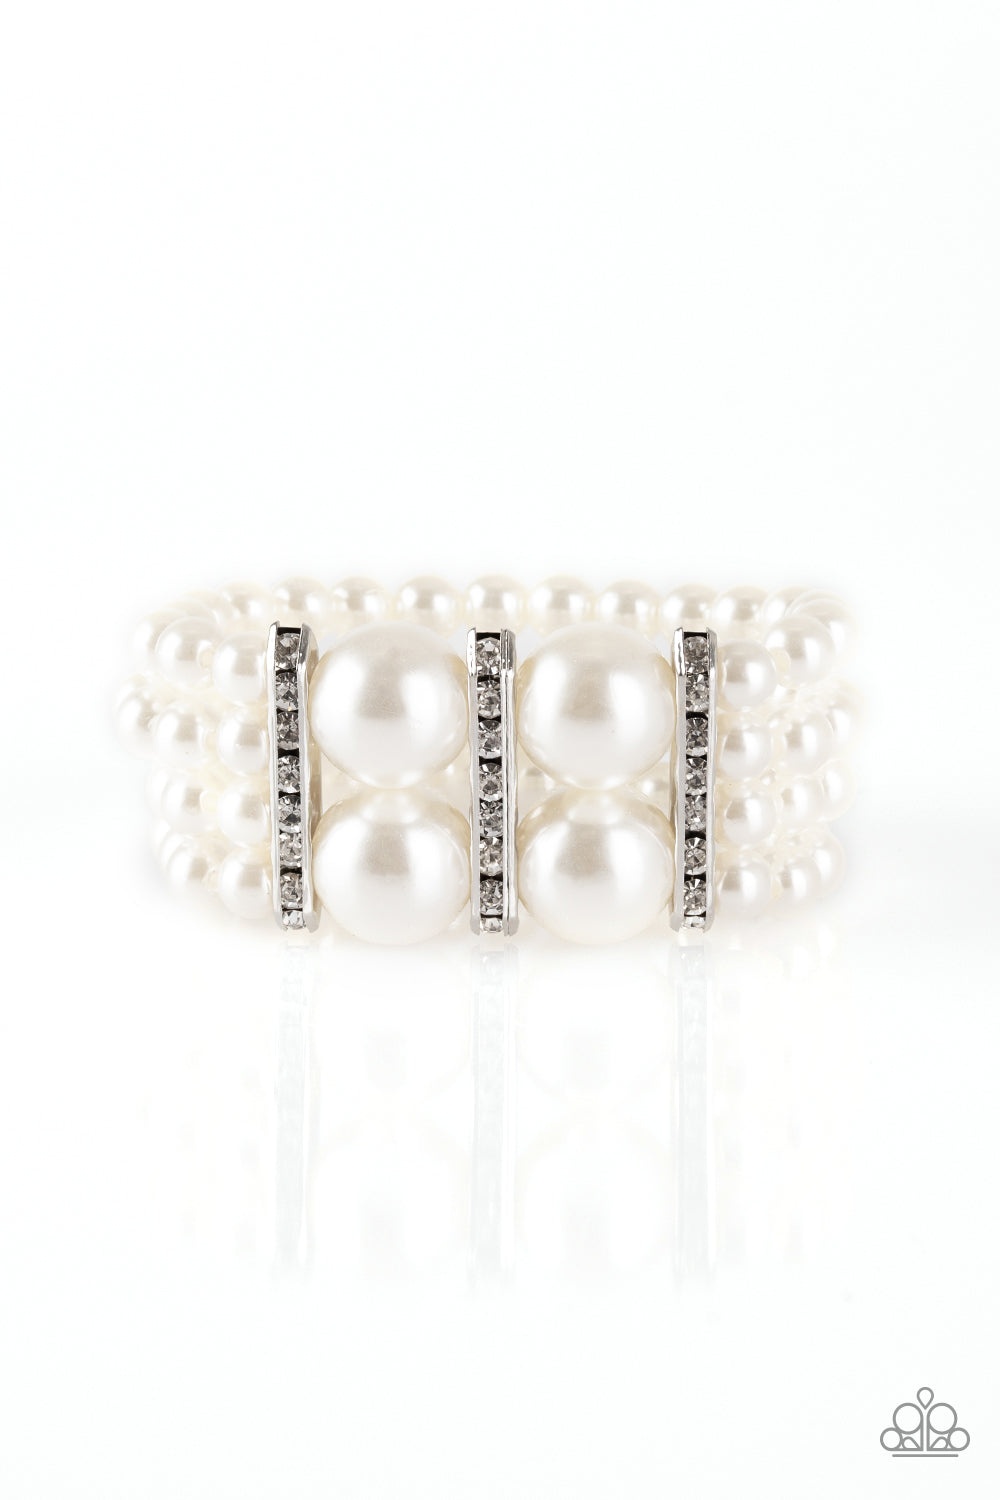 Paparazzi Accessories Romance Remix - White Pearl Bracelets  - Lady T Accessories